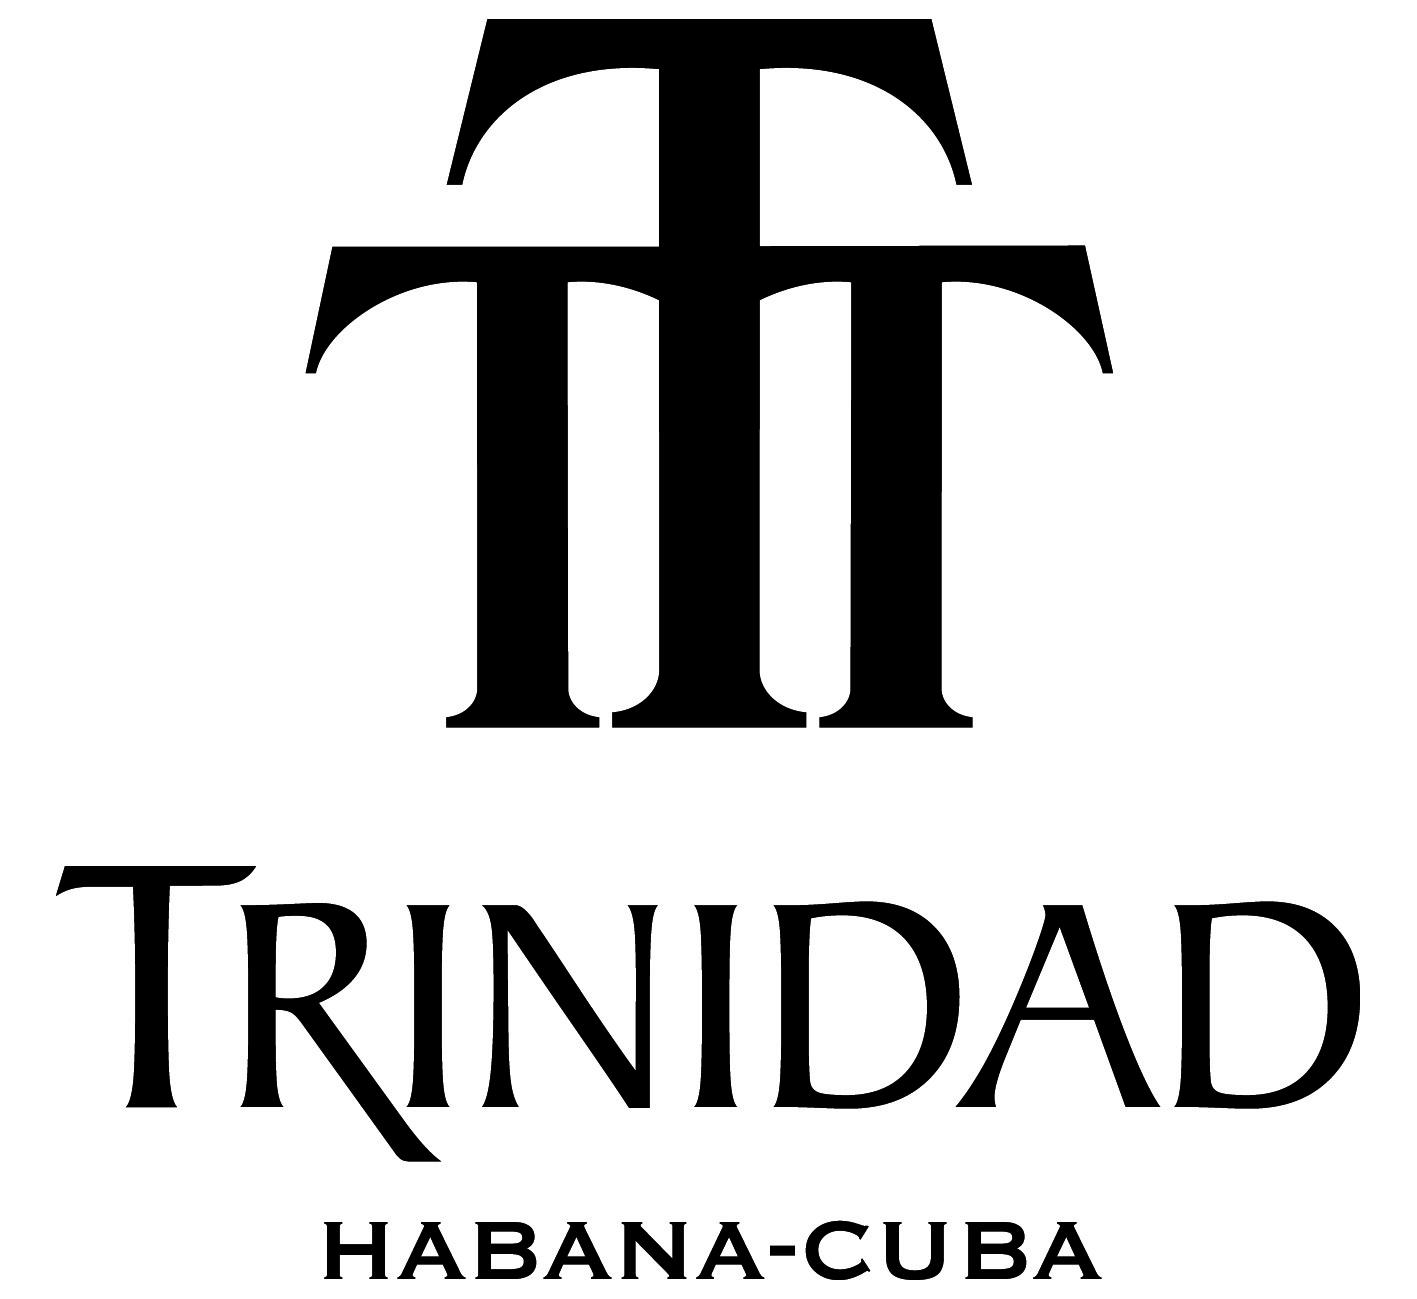 Trinidad Zigarren